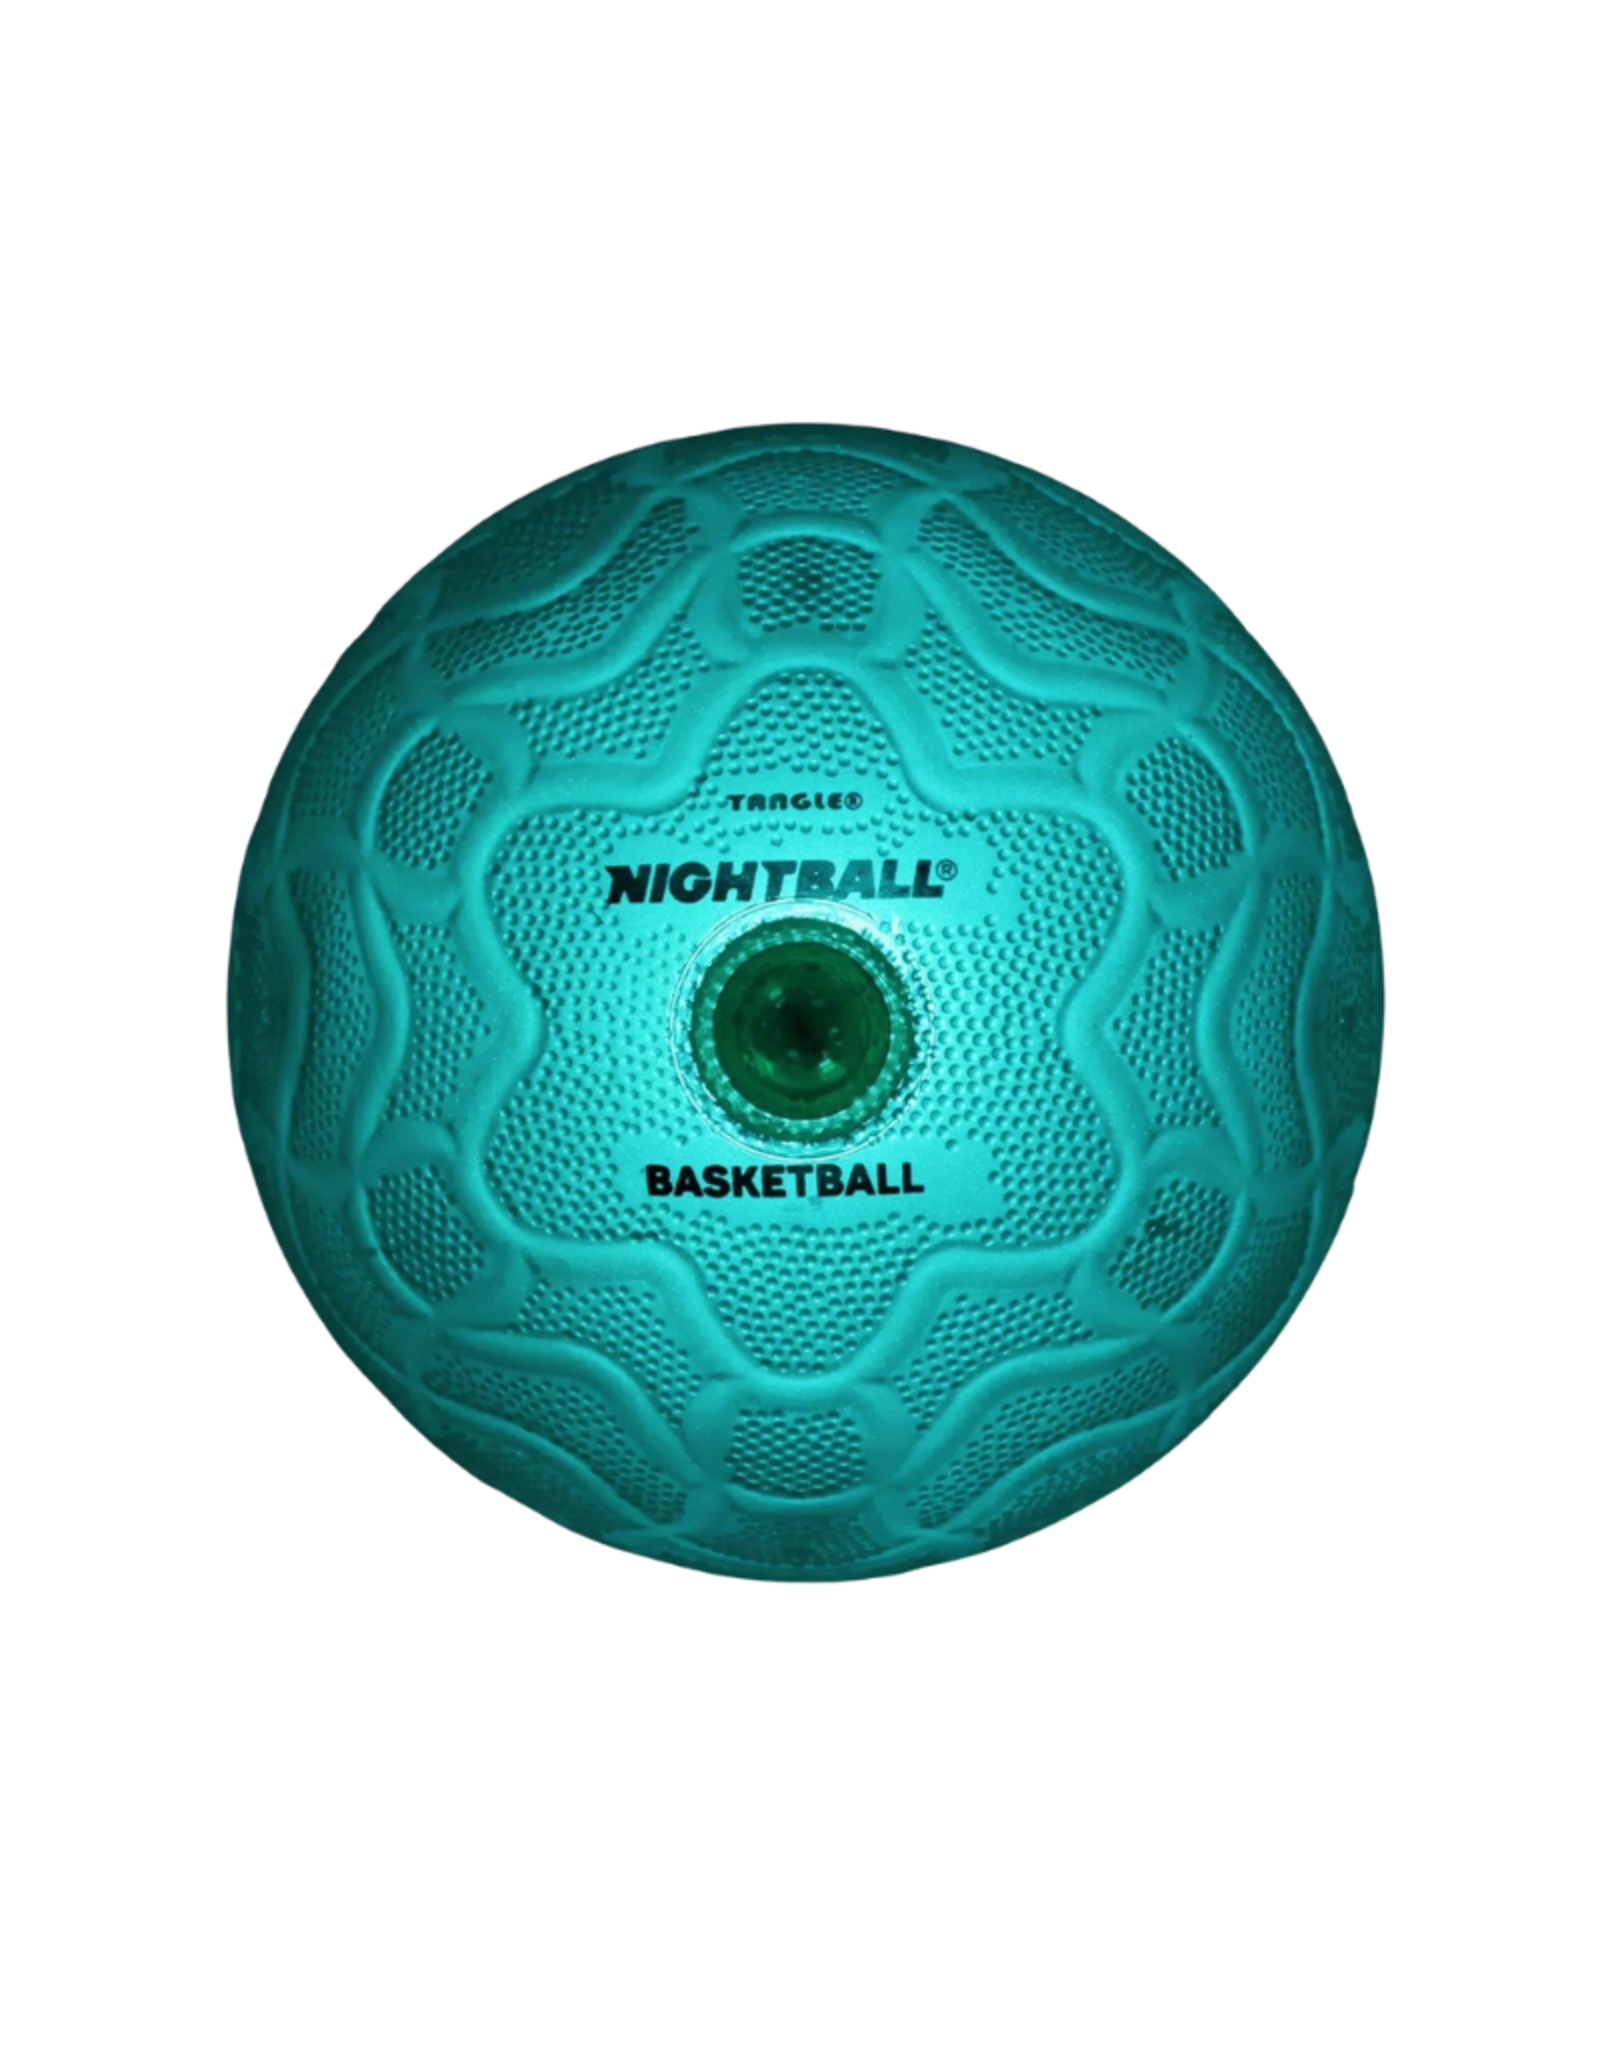 Tangle NightBall: Basketball